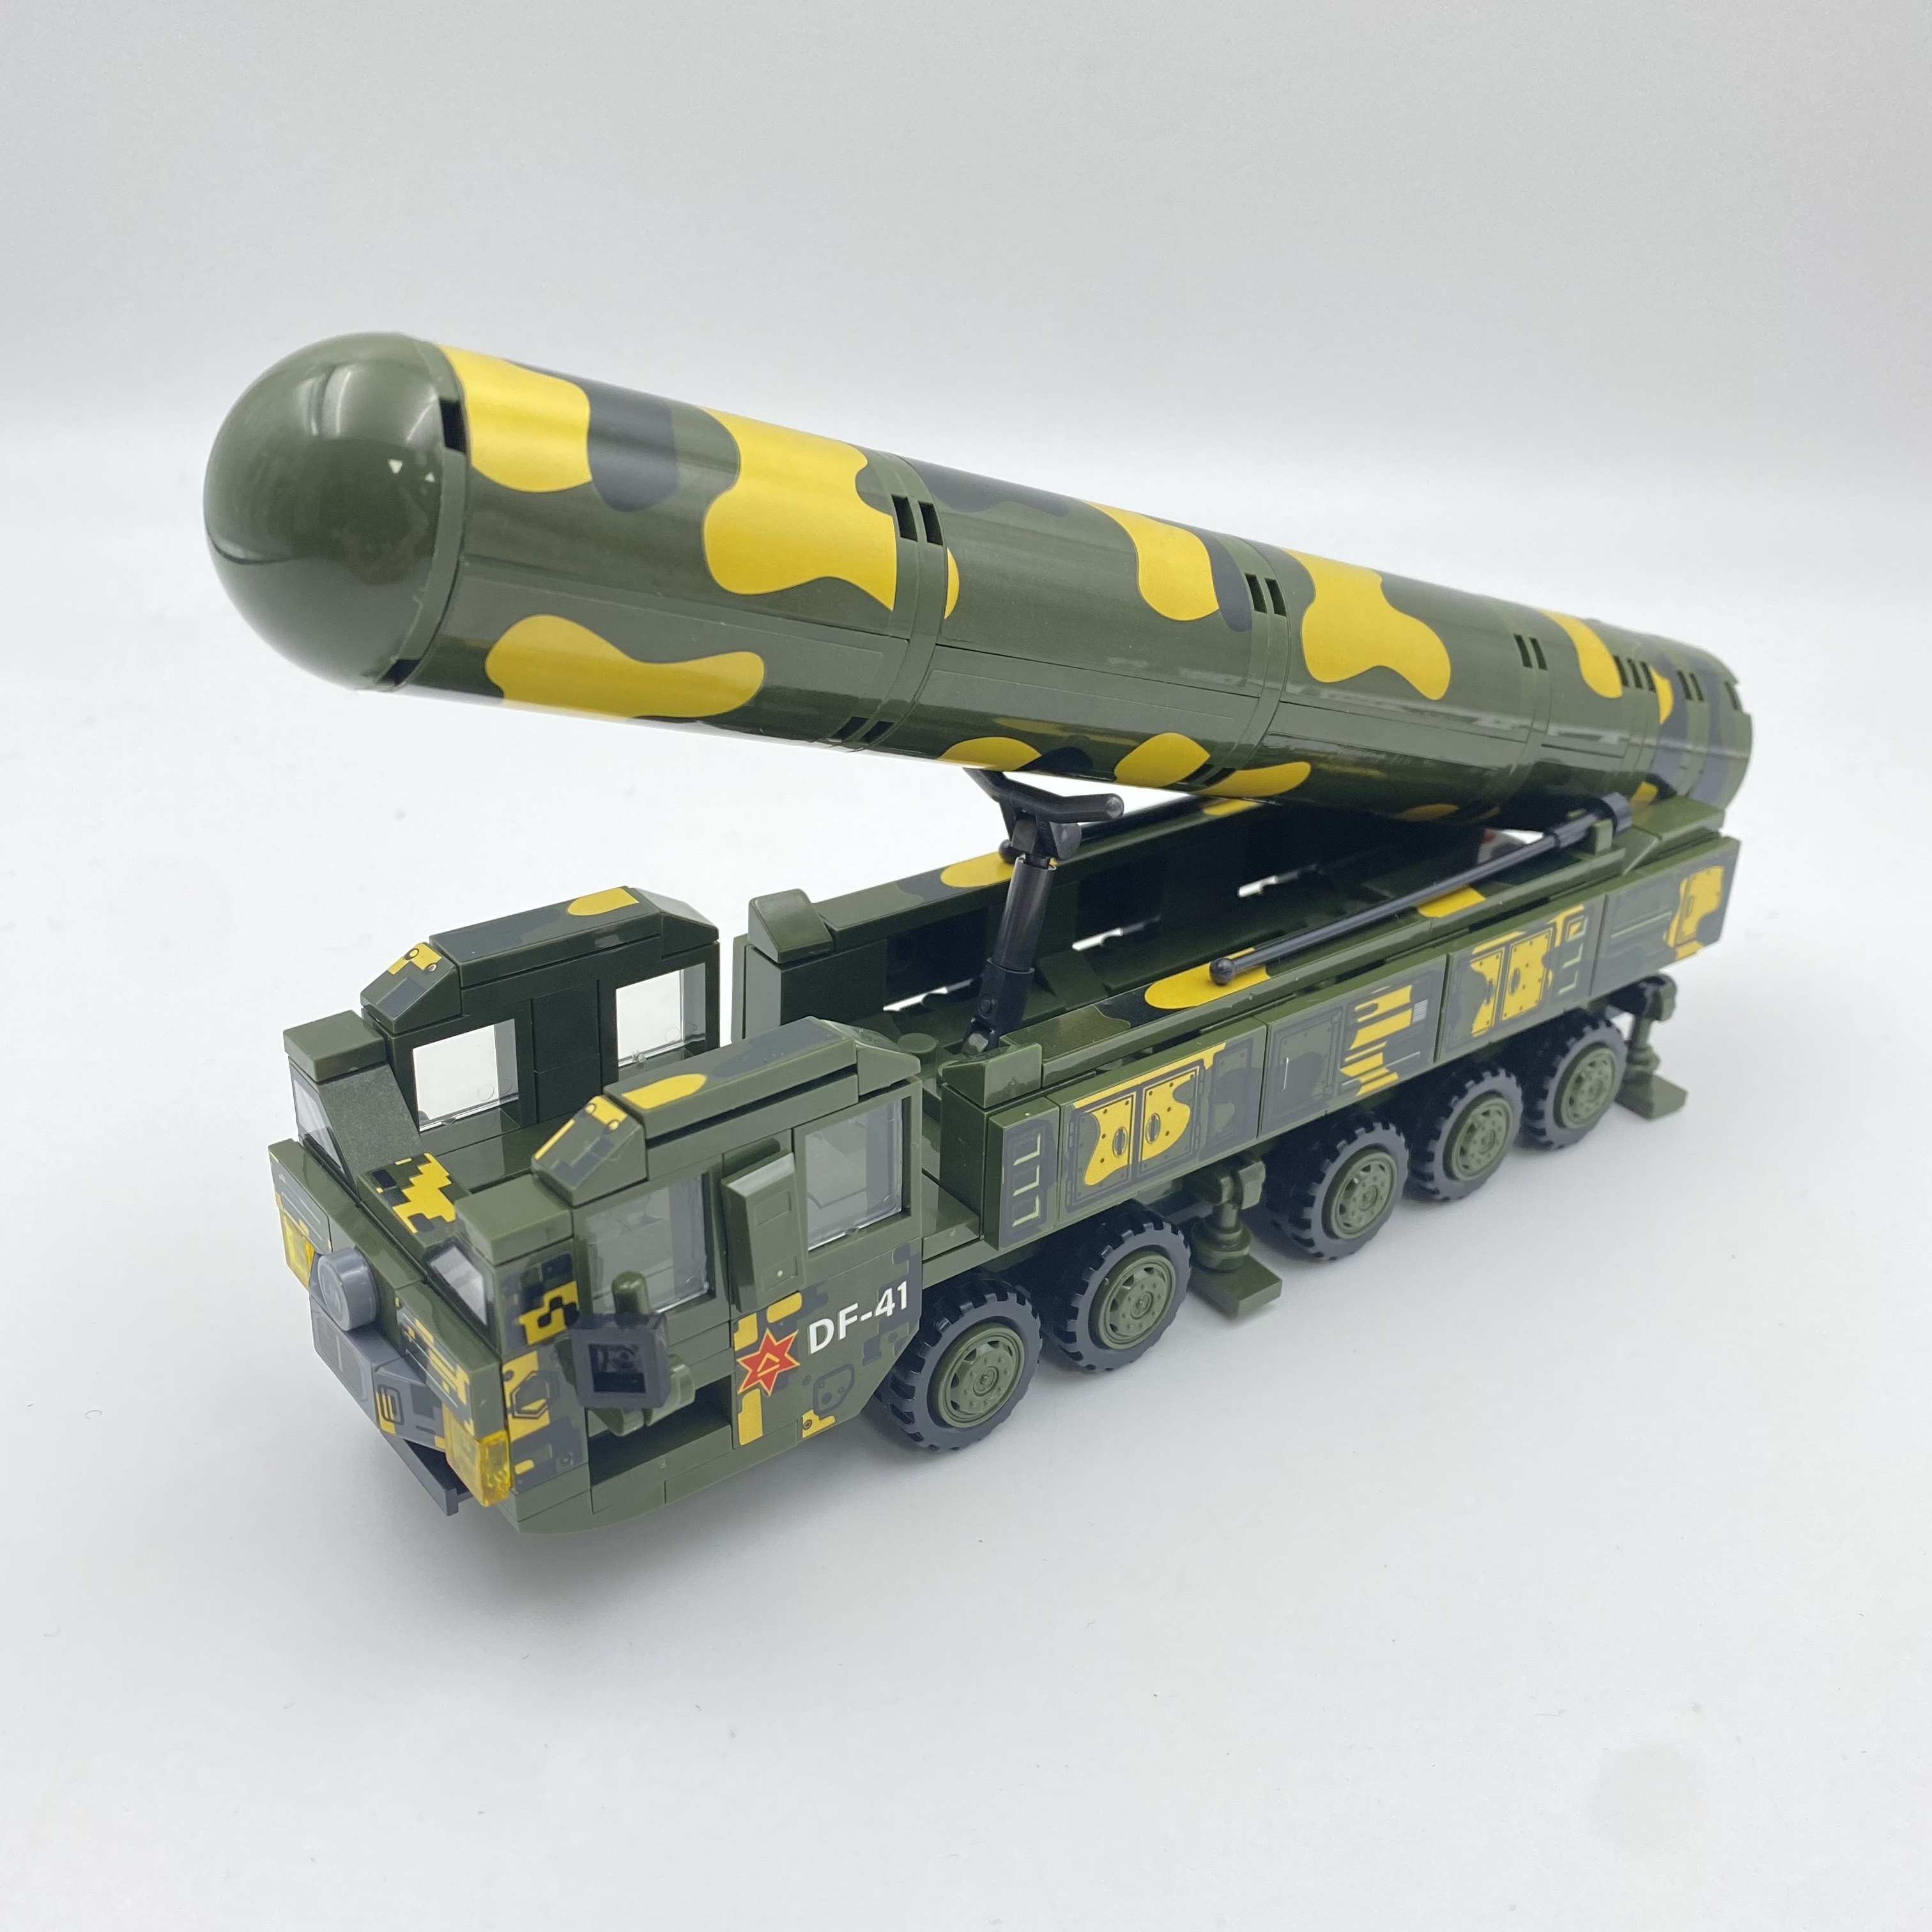 350個の軍事シリーズミサイル車両シミュレーションモデル、弾道ミサイルリフト回転小型組み立てブロックおもちゃ、誕生日プレゼント